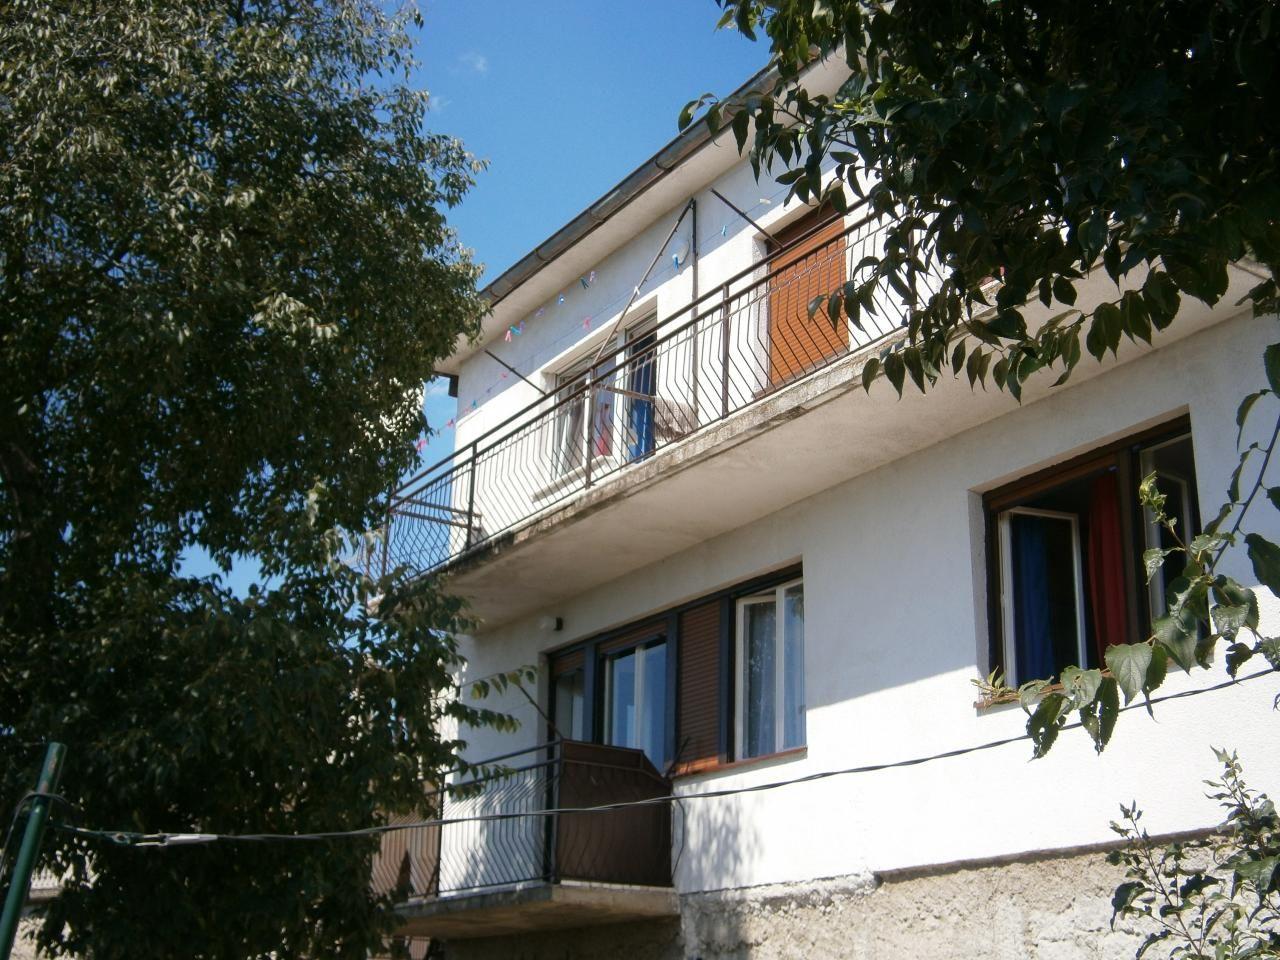 Appartement in Novi Vinodolski mit Terrasse, Garte Ferienhaus in Kroatien